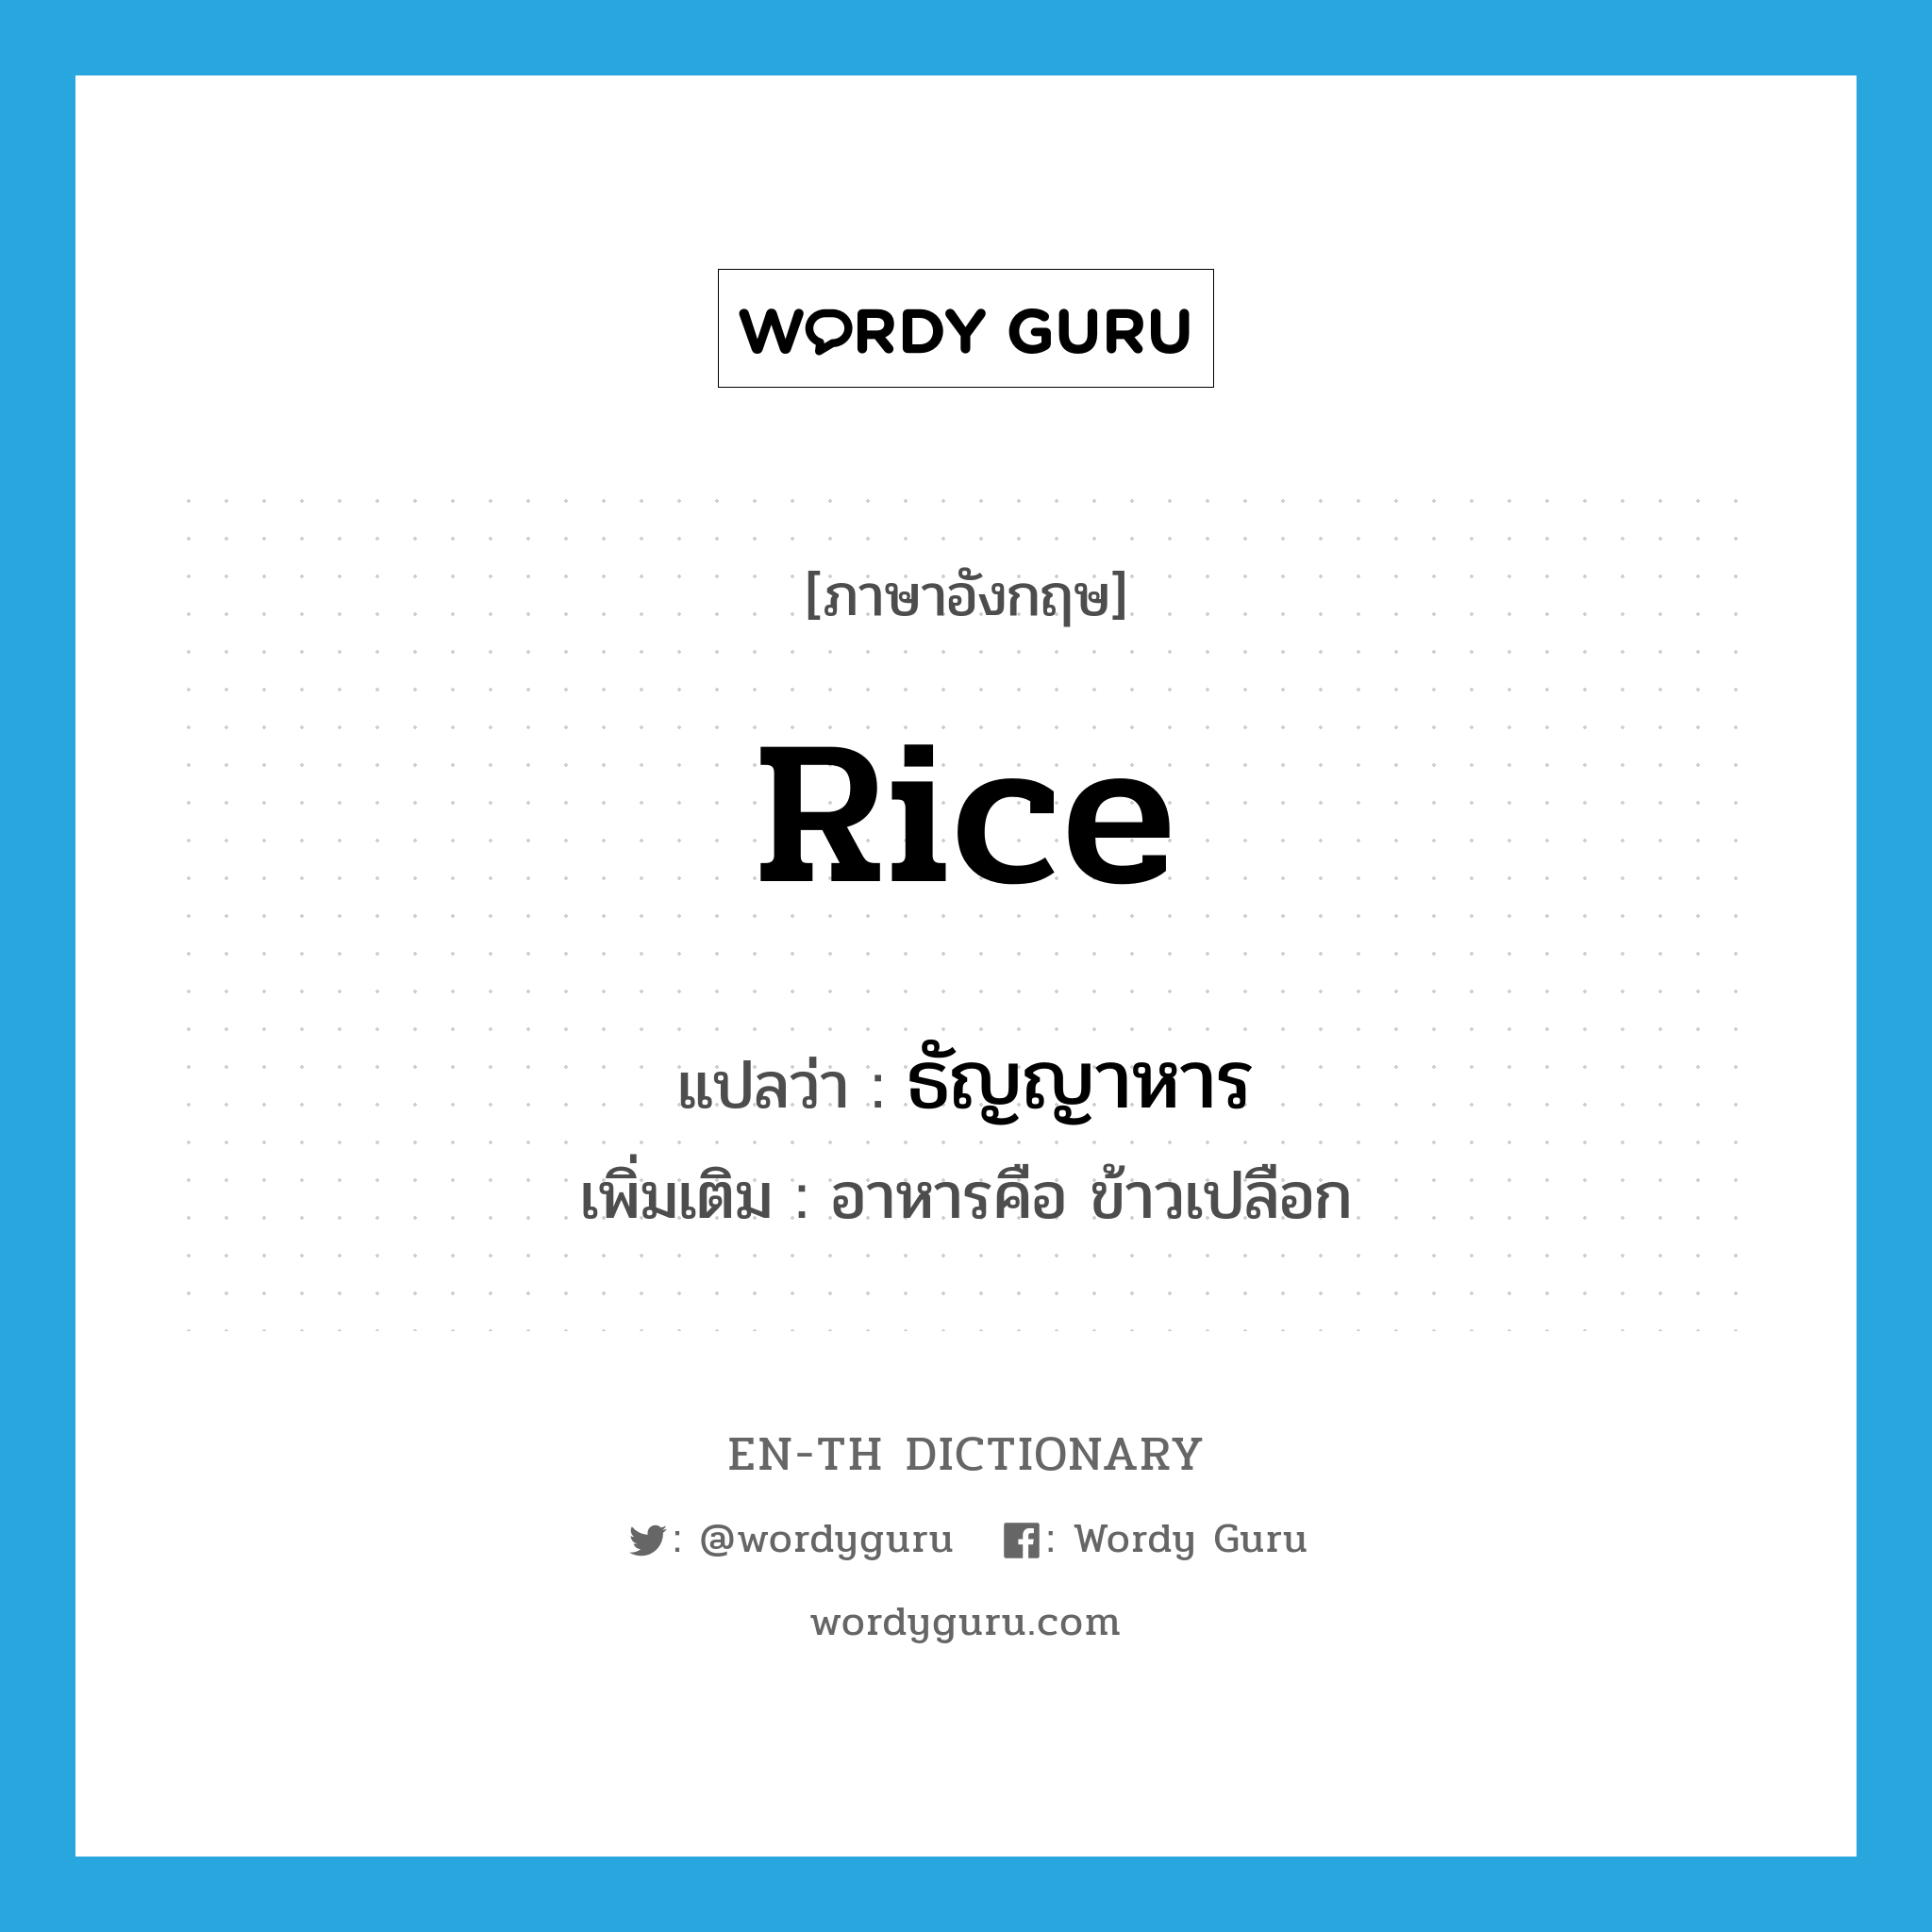 rice แปลว่า?, คำศัพท์ภาษาอังกฤษ rice แปลว่า ธัญญาหาร ประเภท N เพิ่มเติม อาหารคือ ข้าวเปลือก หมวด N